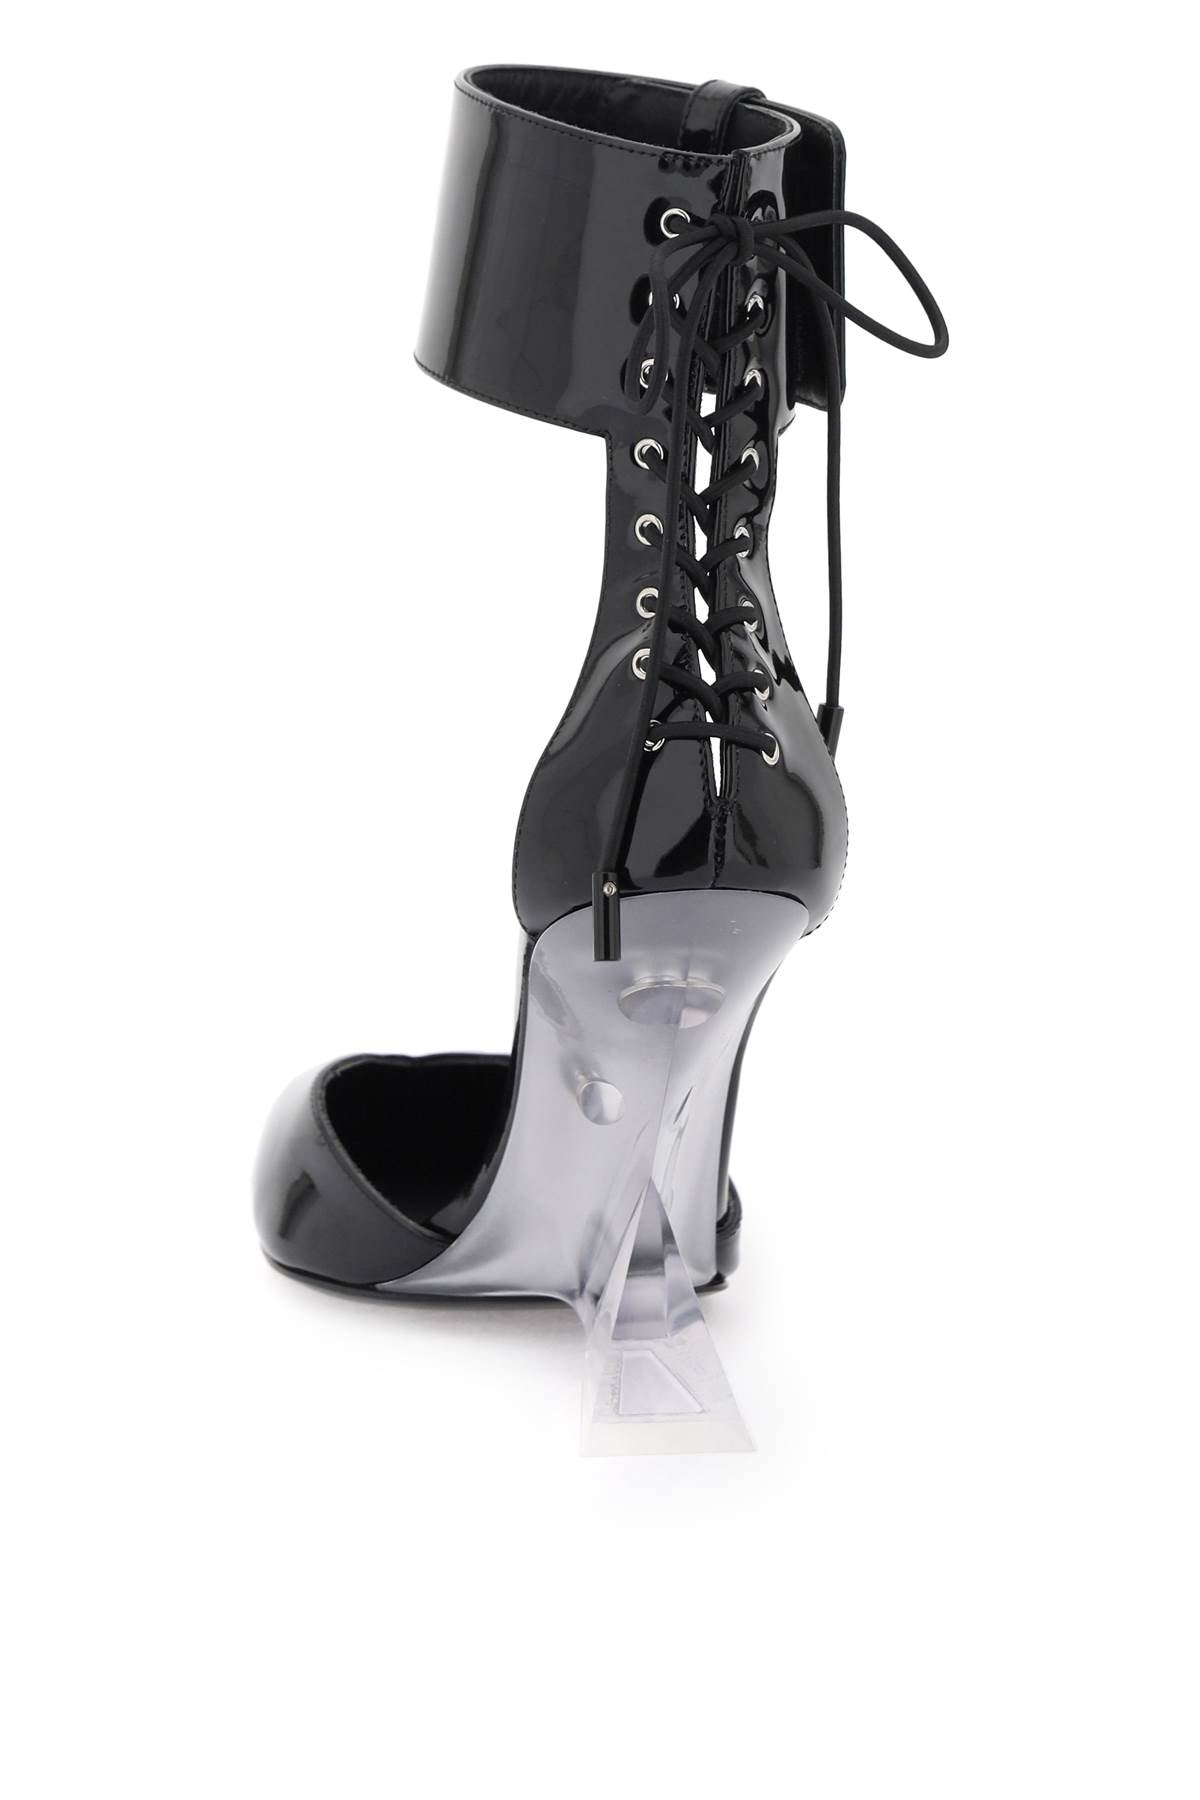 Dép tây đen da bóng với gót hình chóp tượng trưng và dây giày Velcro